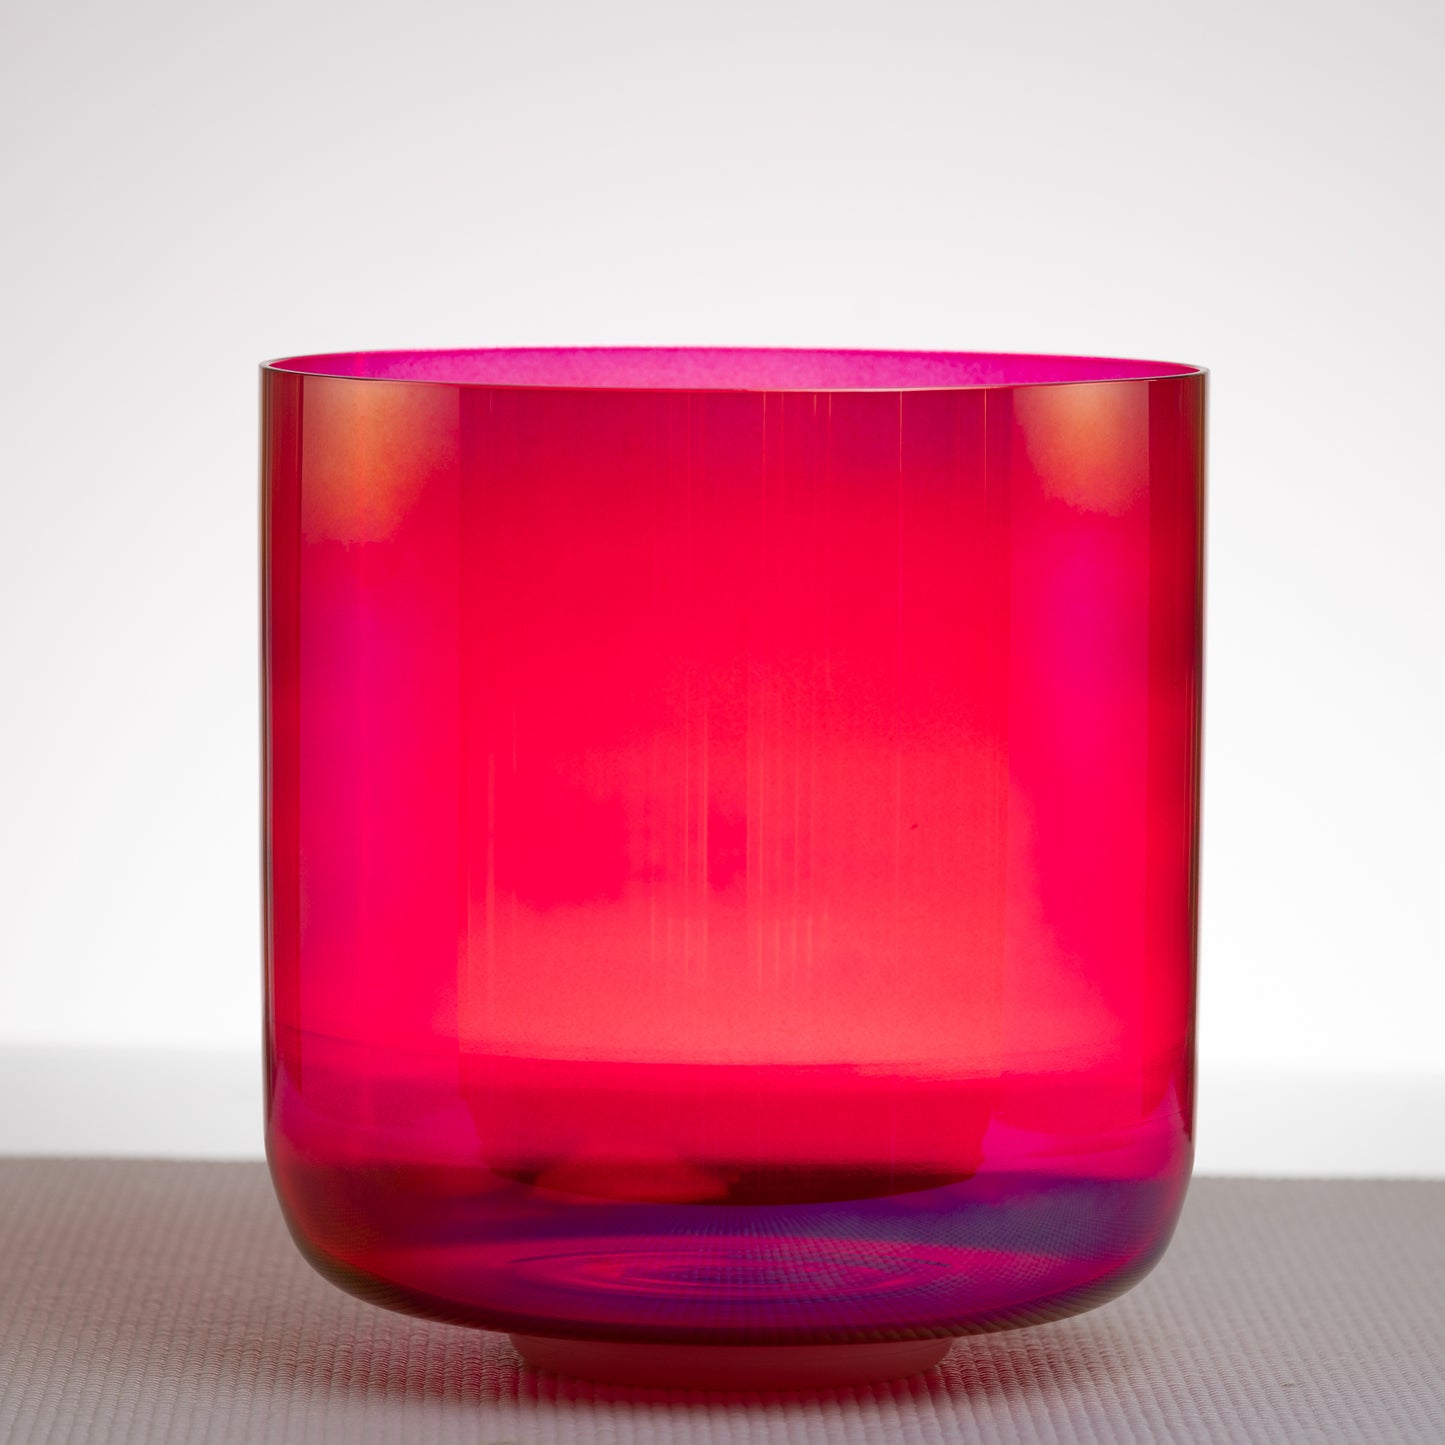 9.25" D#-9 Ruby Color Crystal Singing Bowl, Prismatic, Sacred Singing Bowls